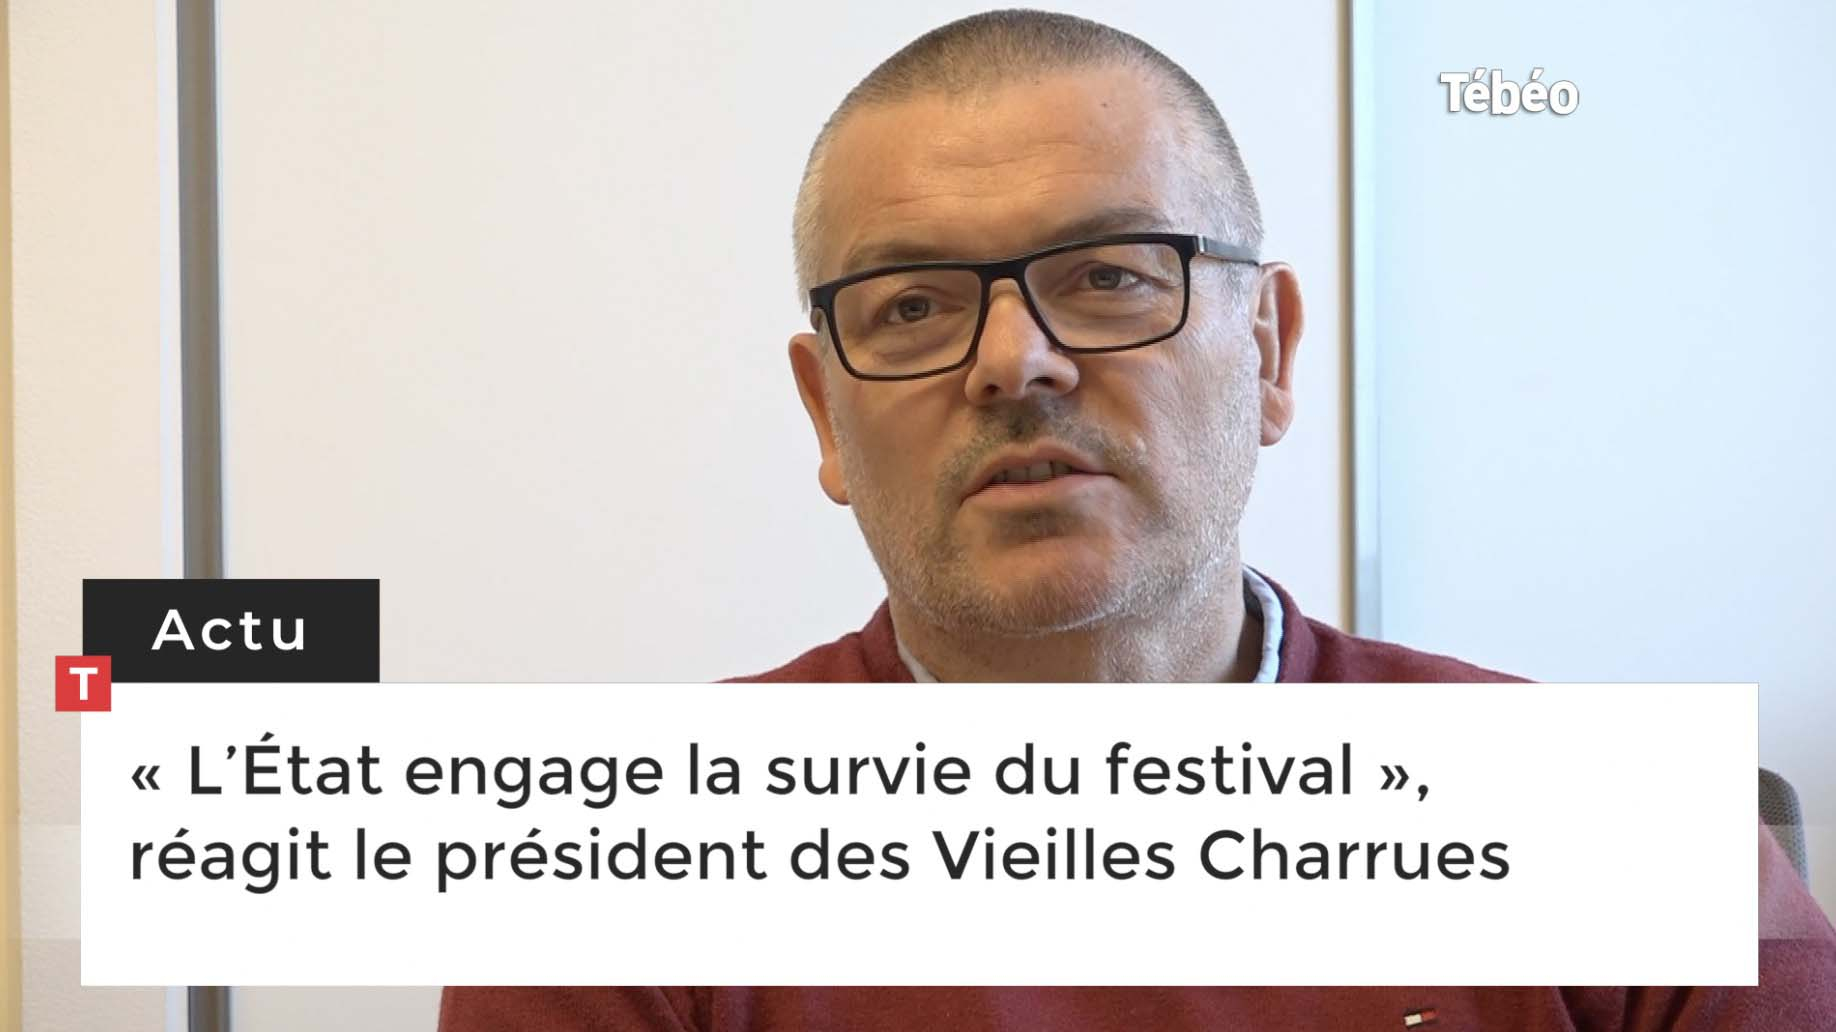 « L’État engage la survie du festival », réagit le président des Vieilles Charrues (Le Télégramme)